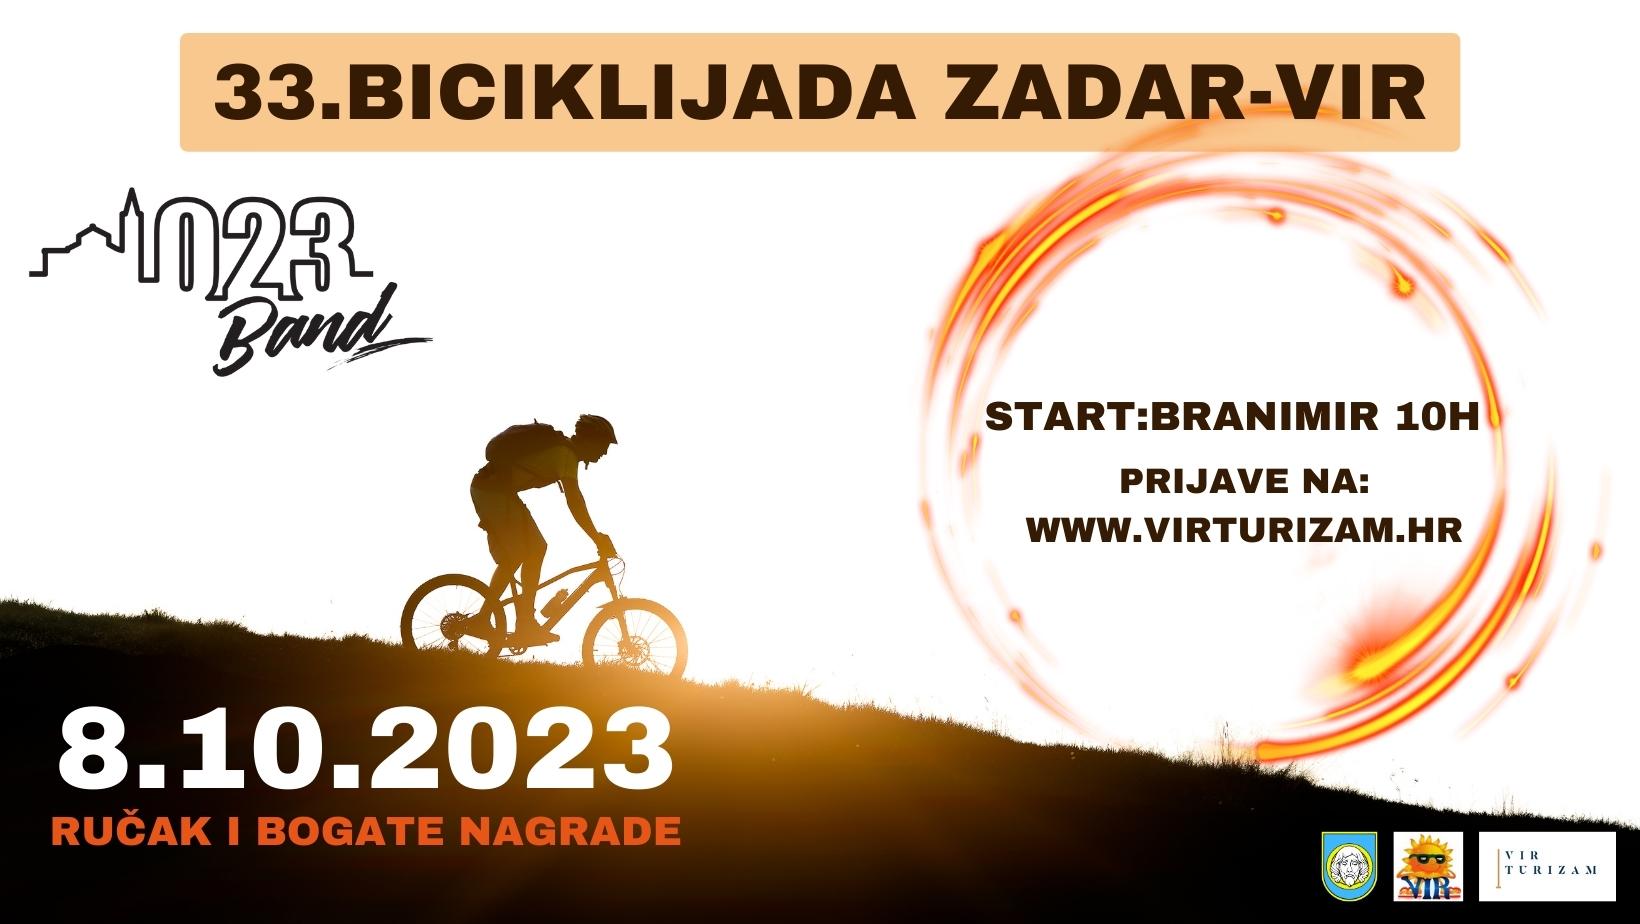 33. Biciklijada Zadar - Vir - ONLINE PRIJAVE 